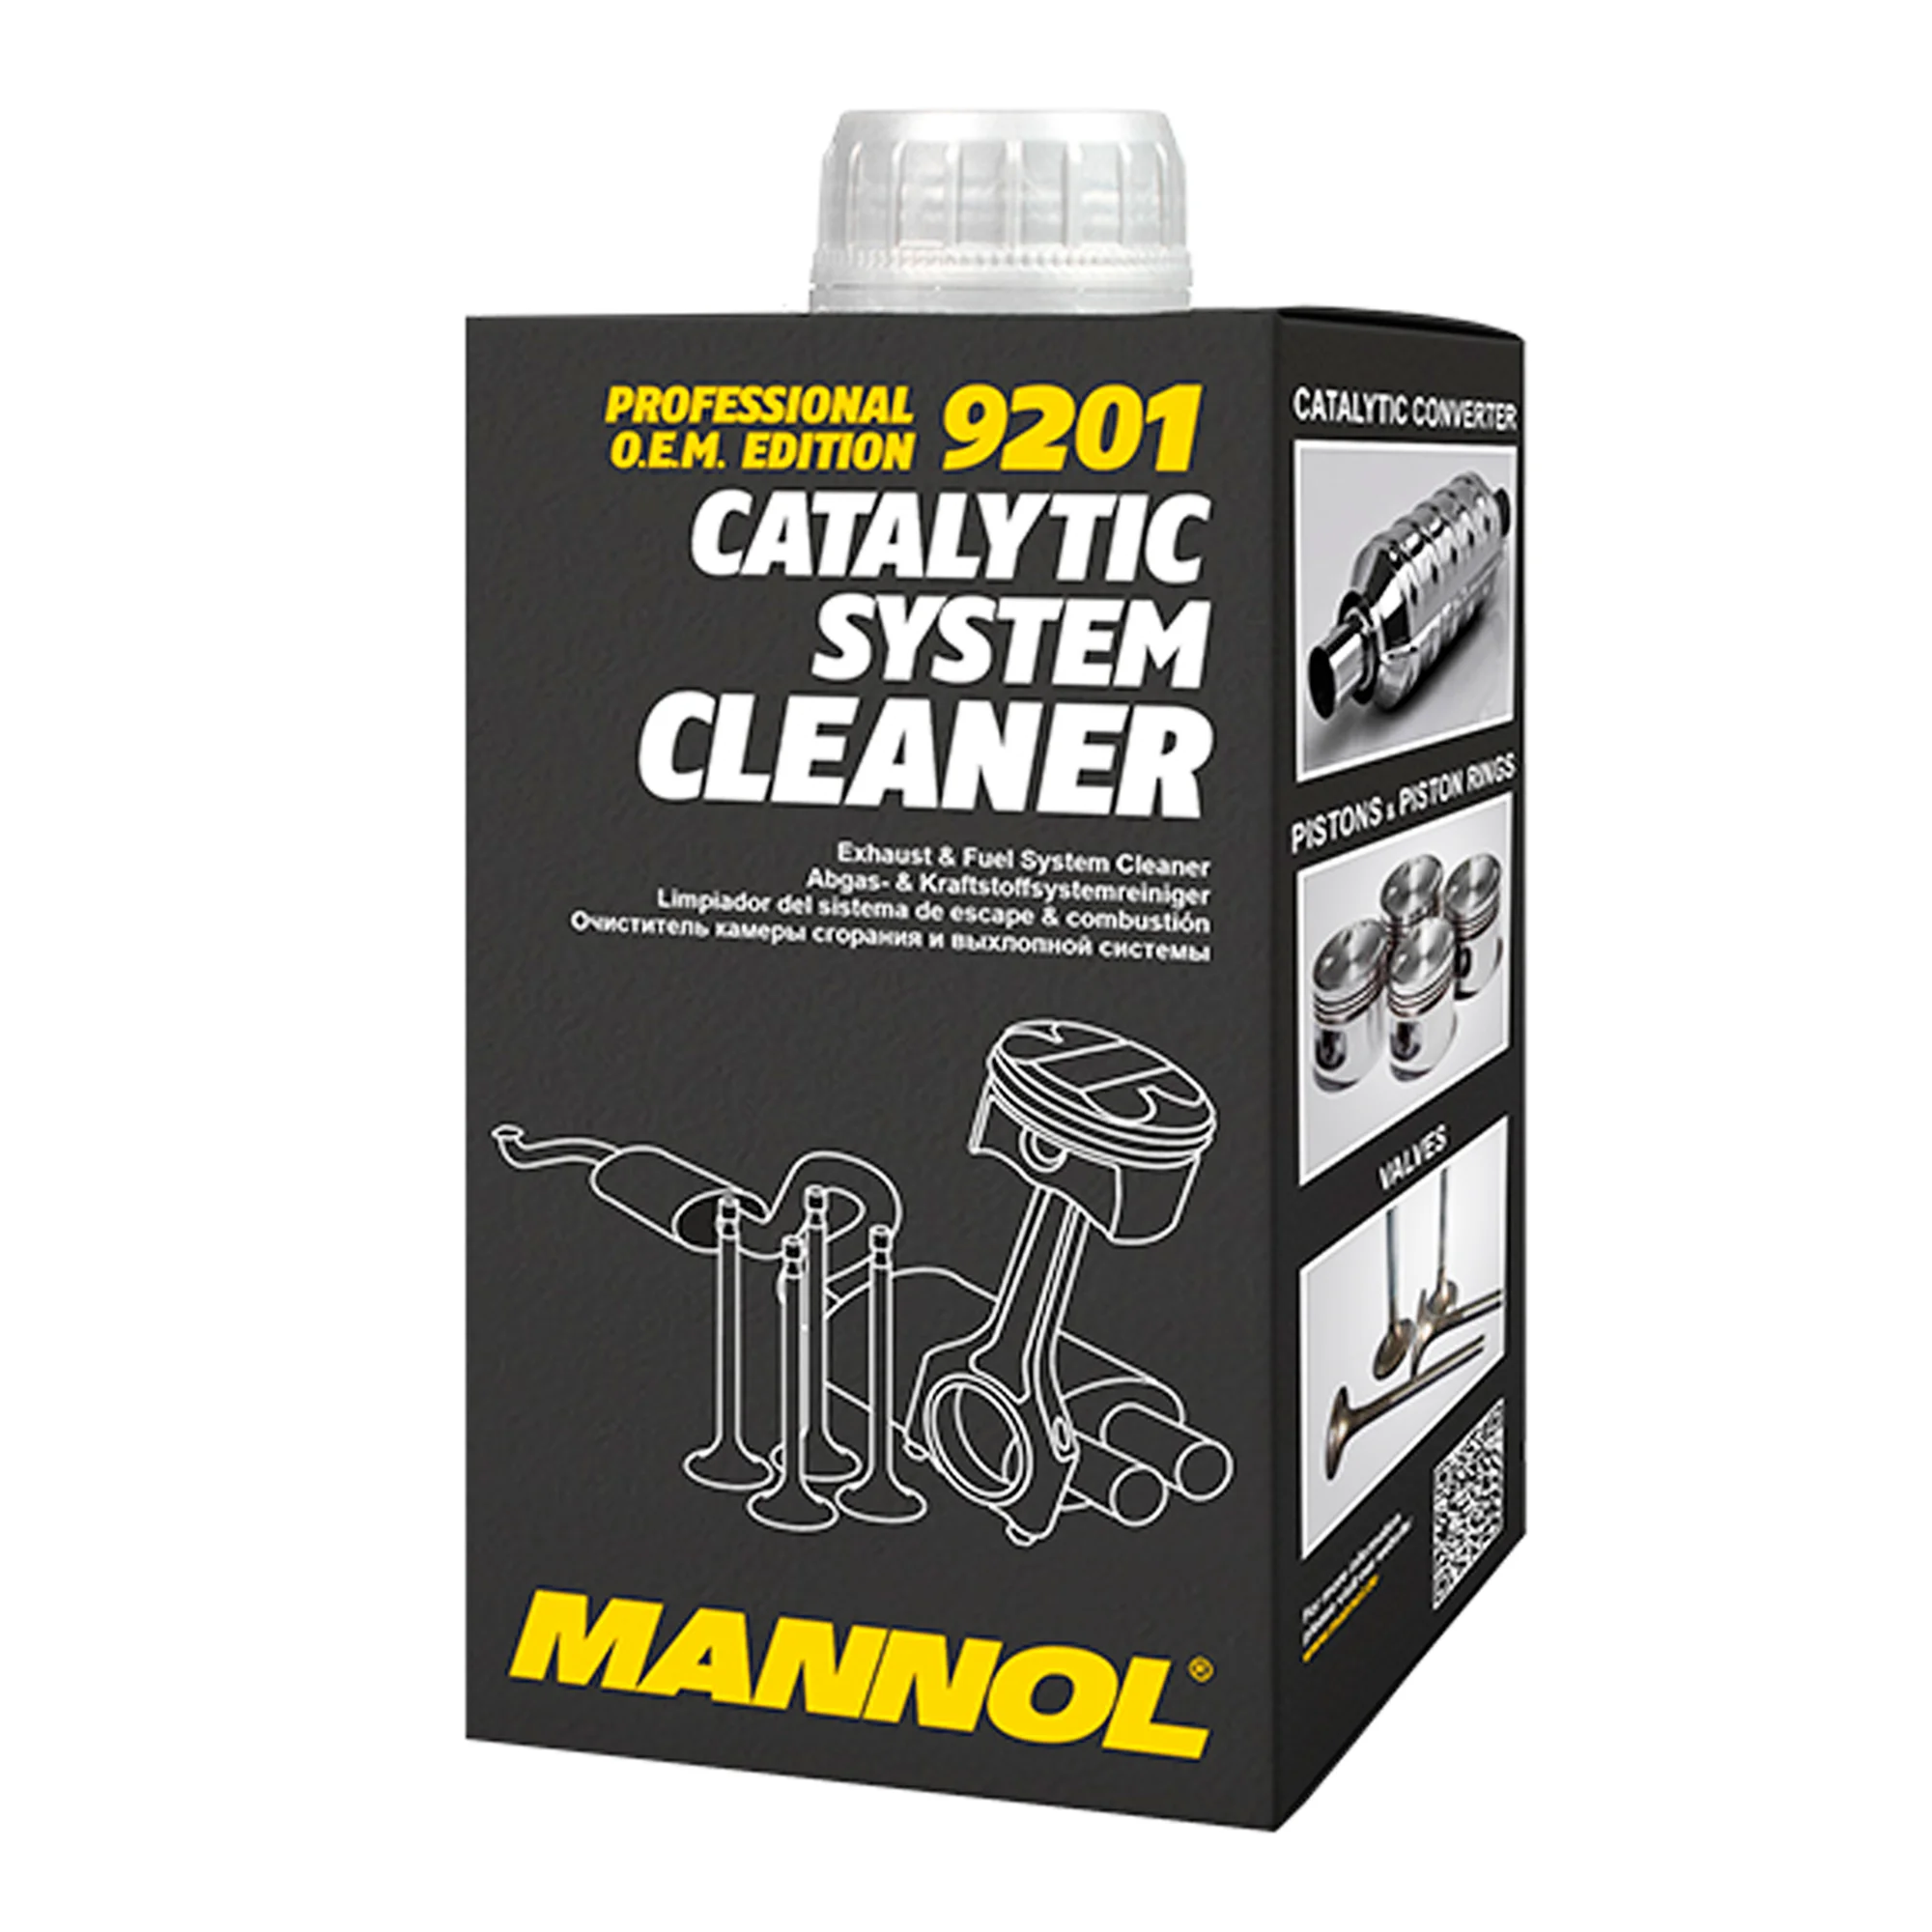 Очиститель впускной системы MANNOL Catalytic System Cleaner 500мл (9201)